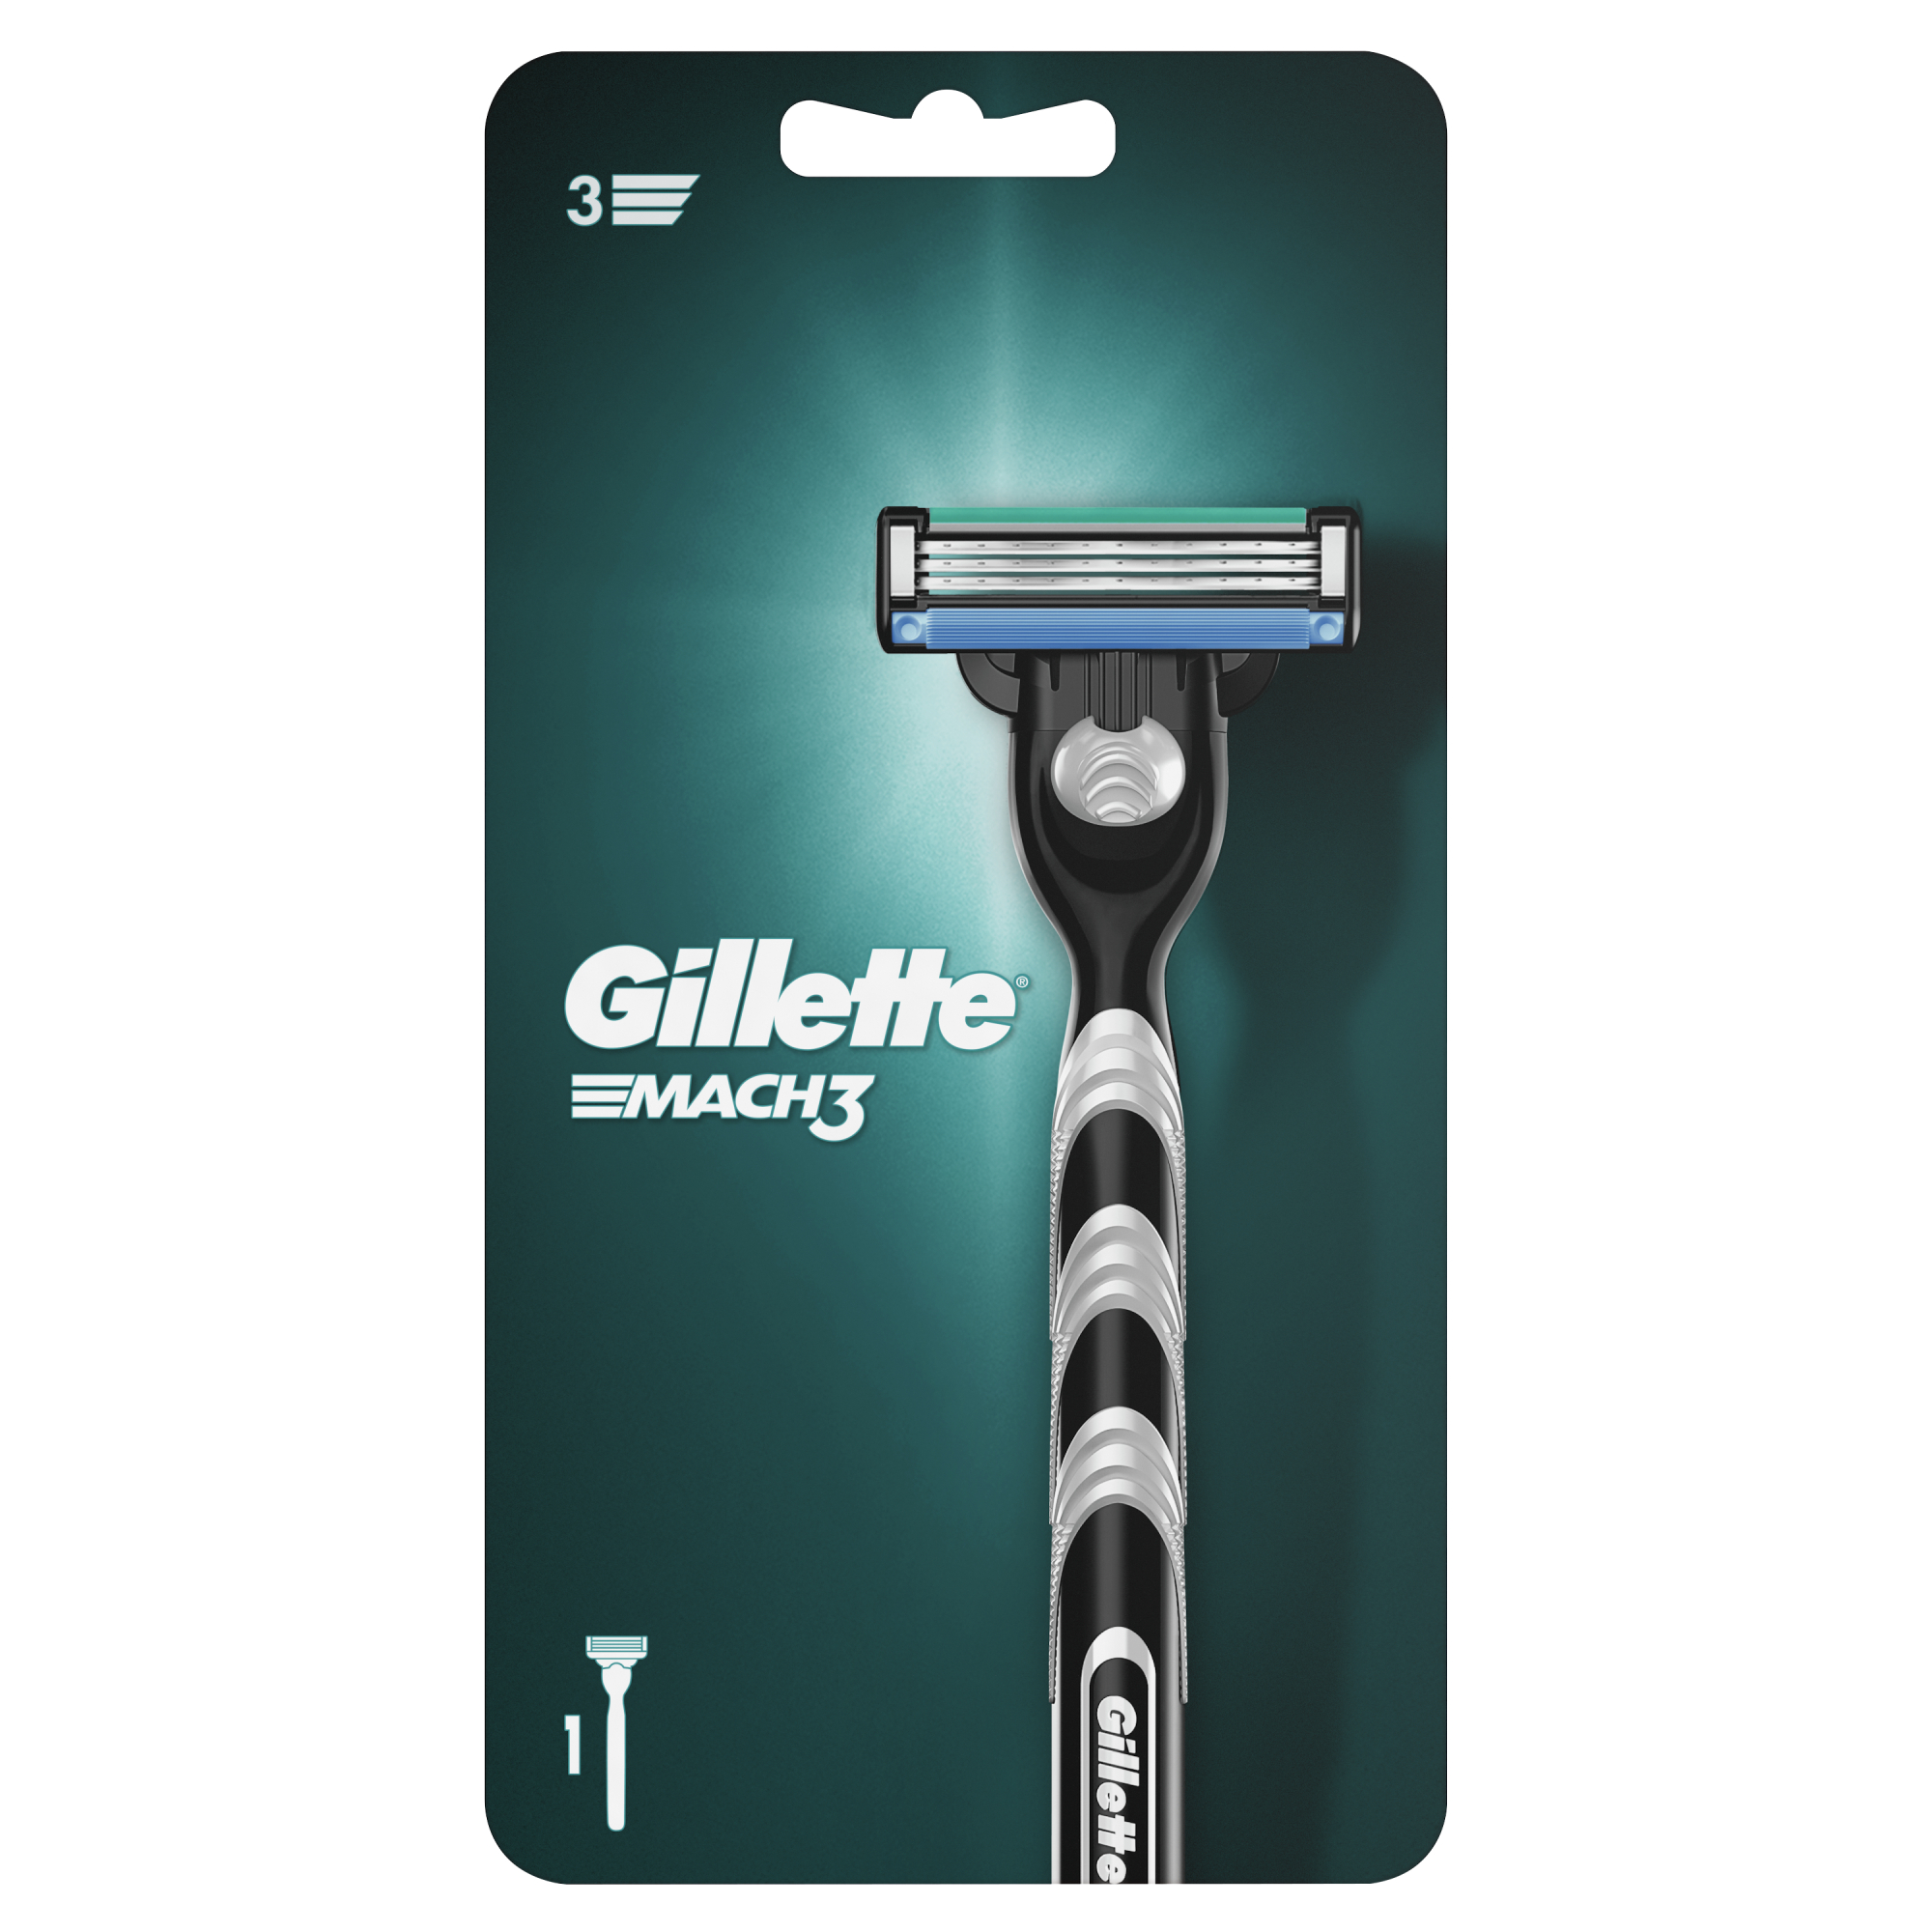 Мужская бритва Gillette Mach3, 1 кассета, с 3 лезвиями, прочнее, чем сталь, для точного бритья gillette подарочный набор gillette mach3